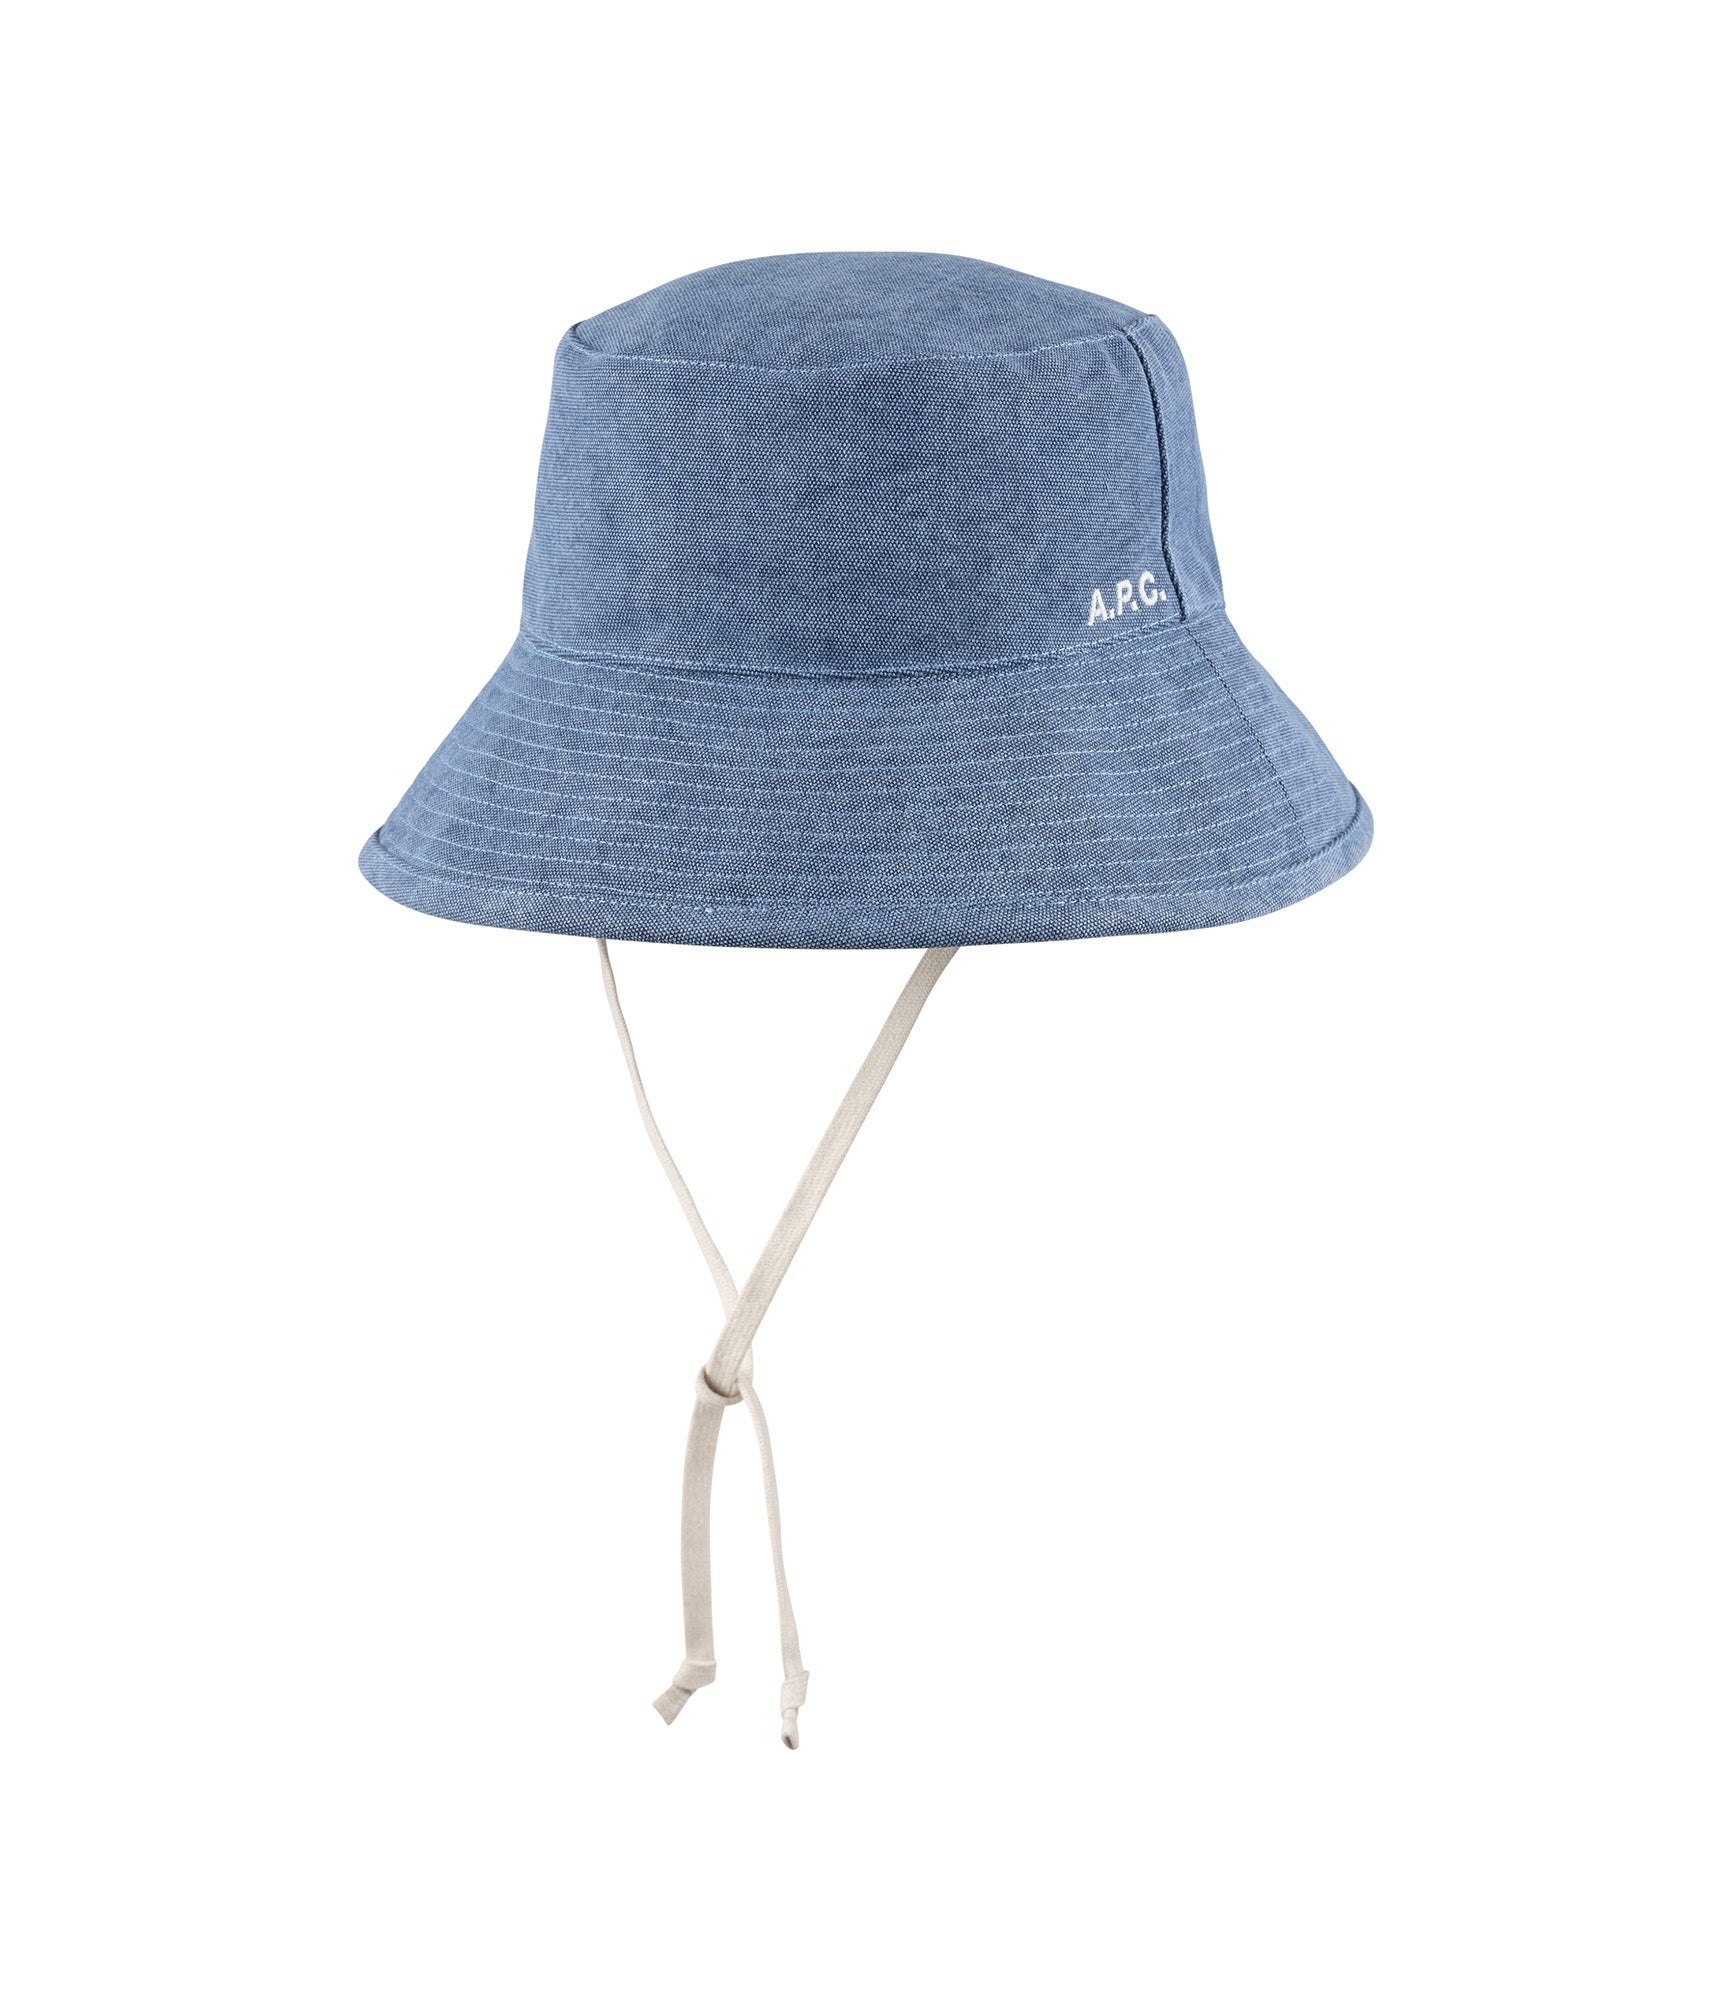 Rachel bucket hat - 1